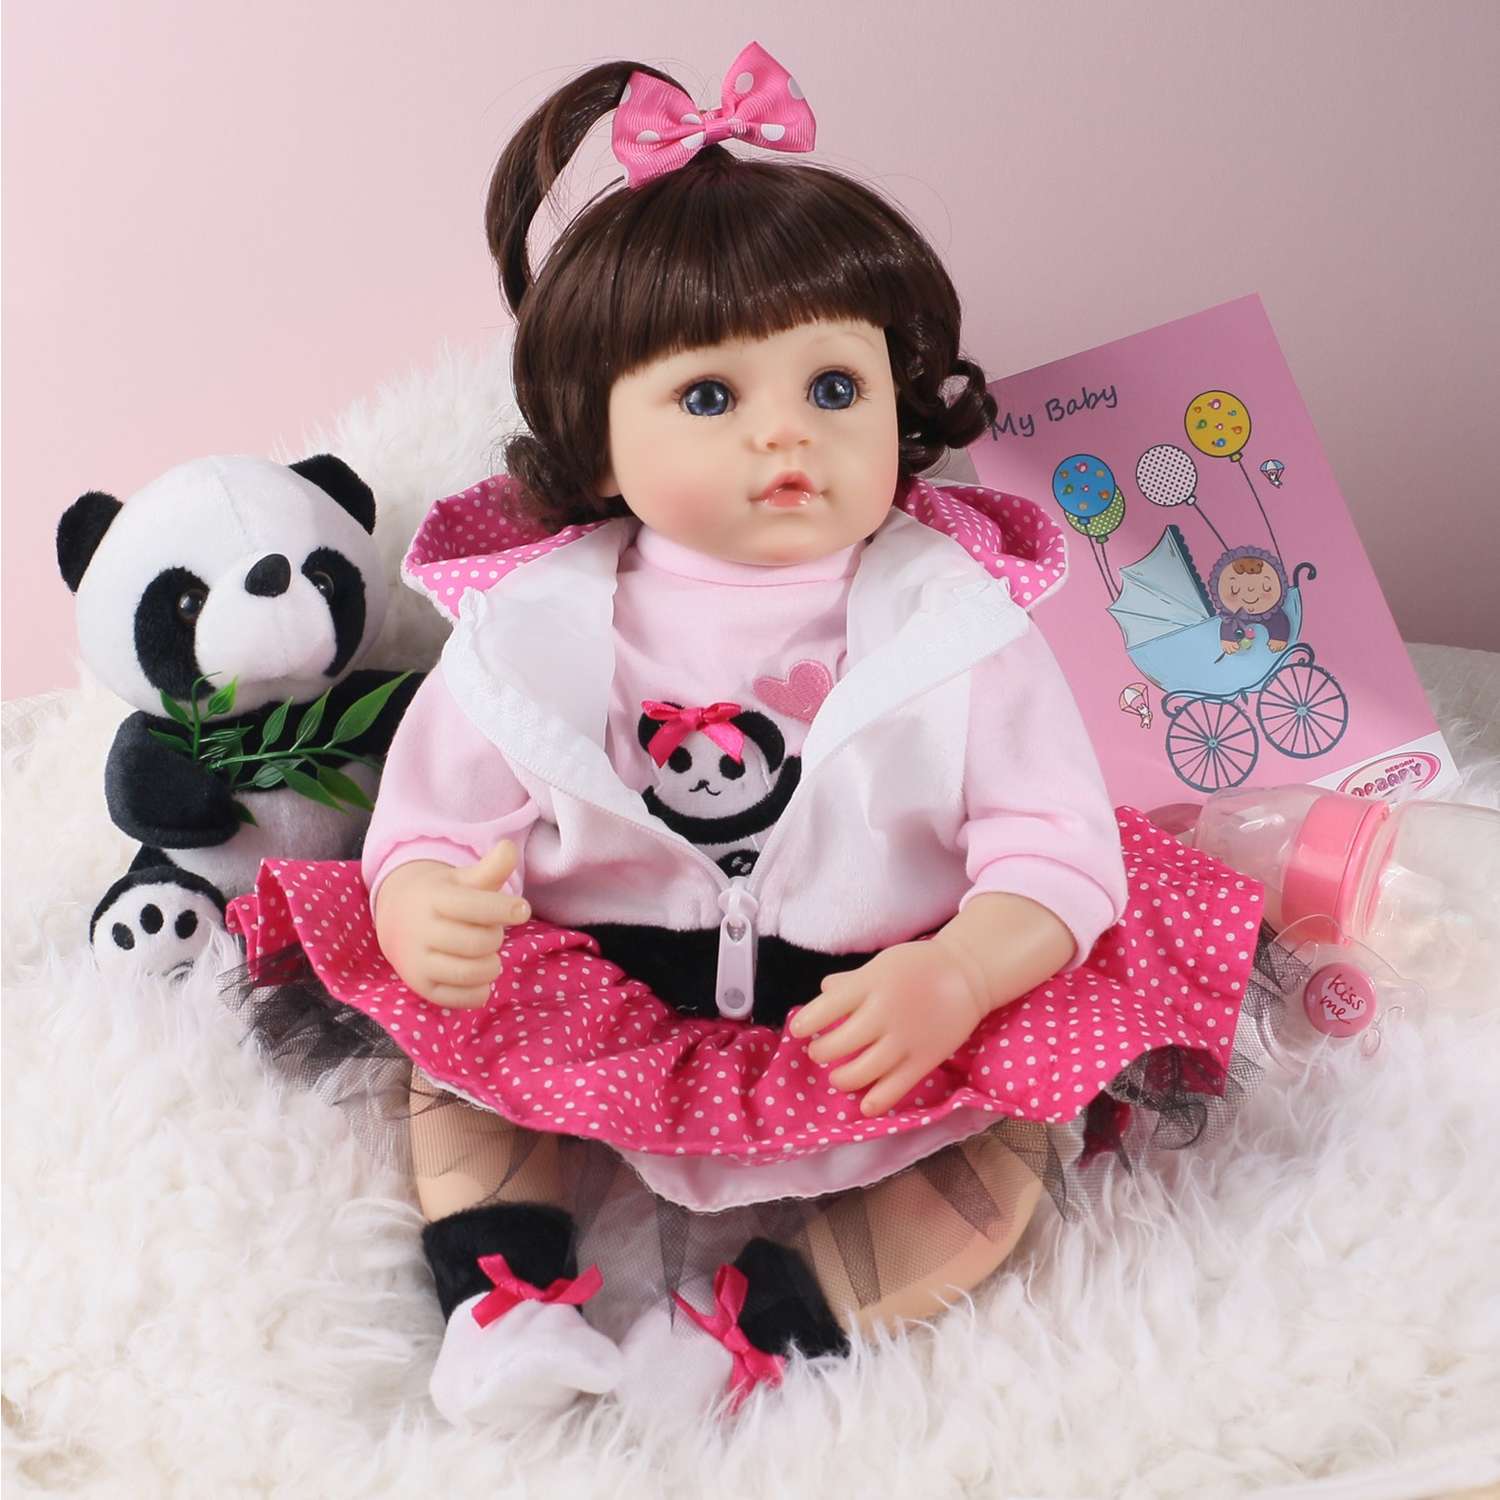 Кукла Реборн QA BABY Алина девочка большая пупс набор игрушки для девочки 42 см 45003 - фото 1